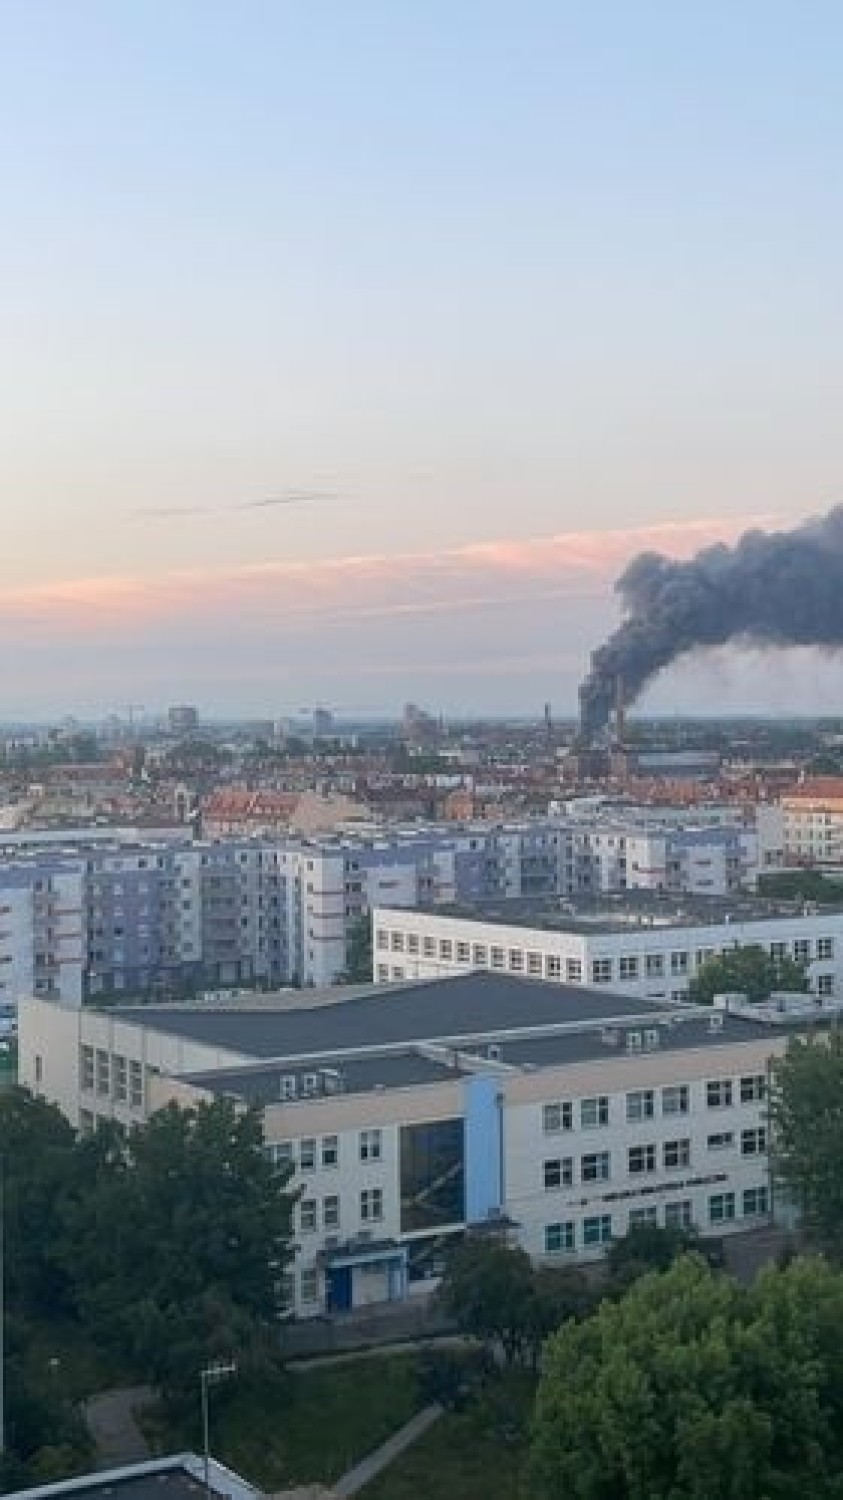 Wrocław. Groźnie wyglądający pożar na ul. Świstackiego